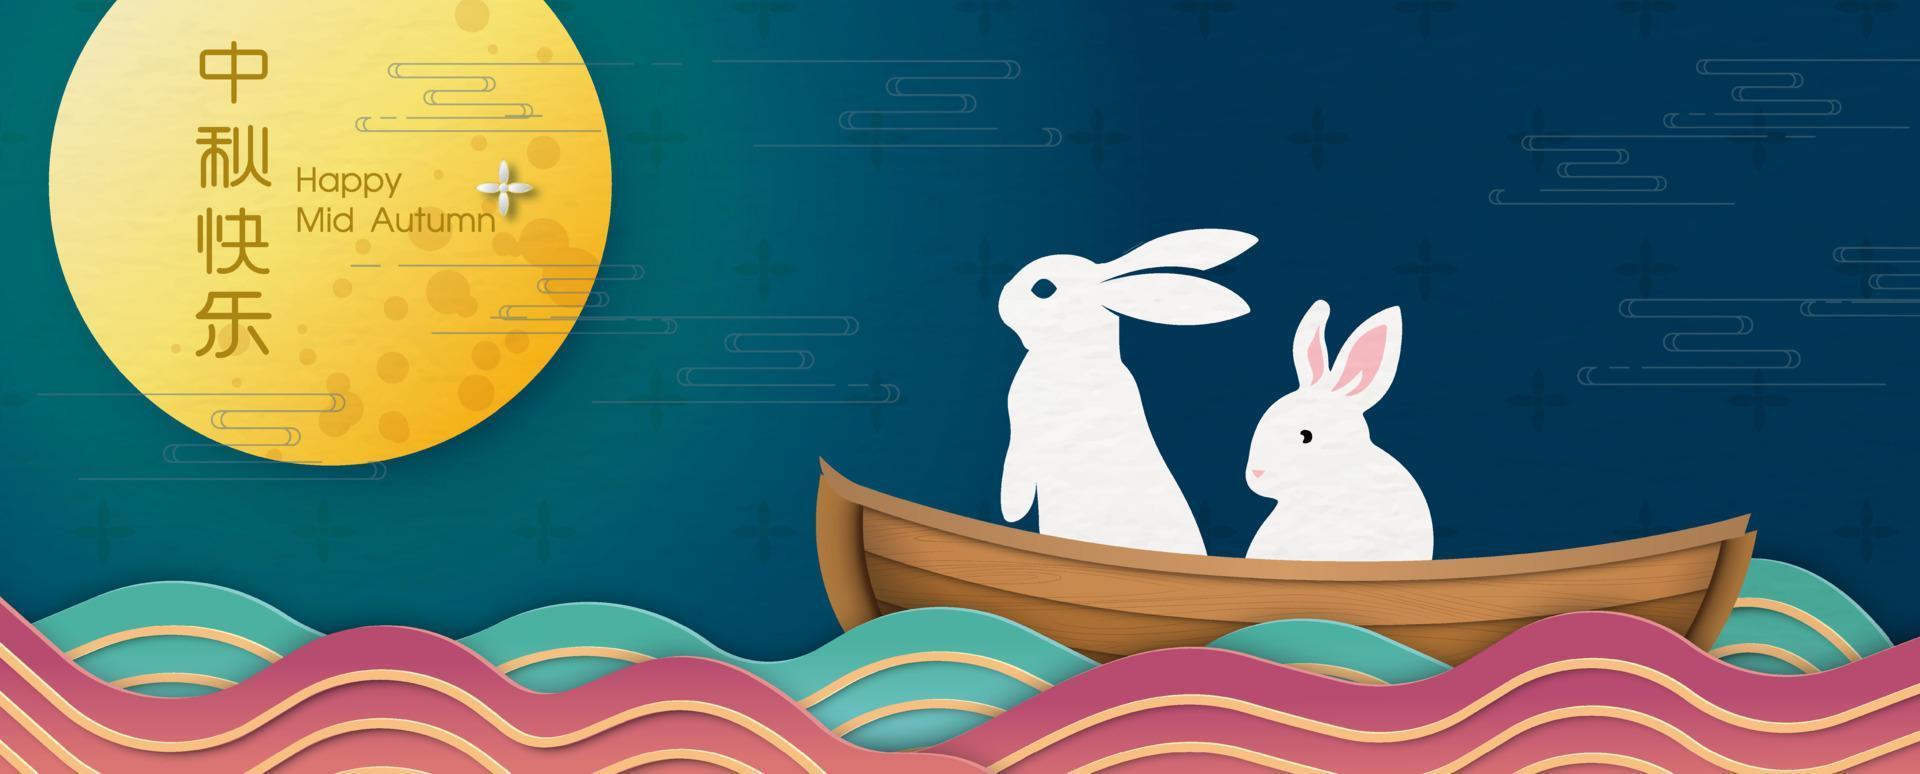 los conejos piden un deseo en un bote de madera en el mar con luna llena brillante en el festival de mediados de otoño. todo en estilo de corte de papel y textos chinos significa feliz mediados de otoño en inglés. vector